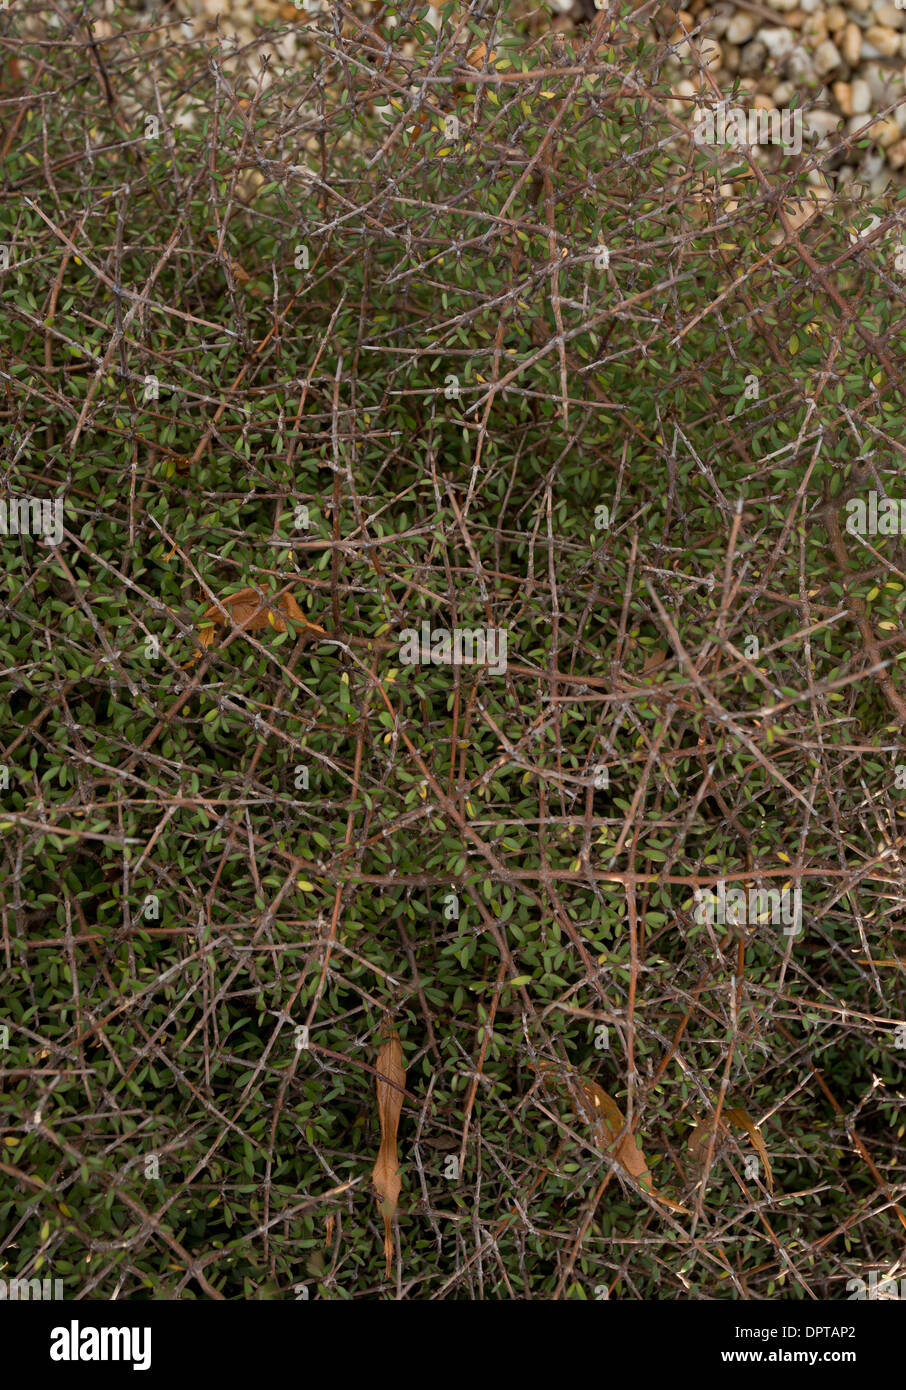 Coprosma frondoso, Coprosma parviflora, Rubiaceae; Nuova Zelanda. Mostra divaricare la ramificazione, tipico di arbusti esplorati dagli uccelli. Foto Stock